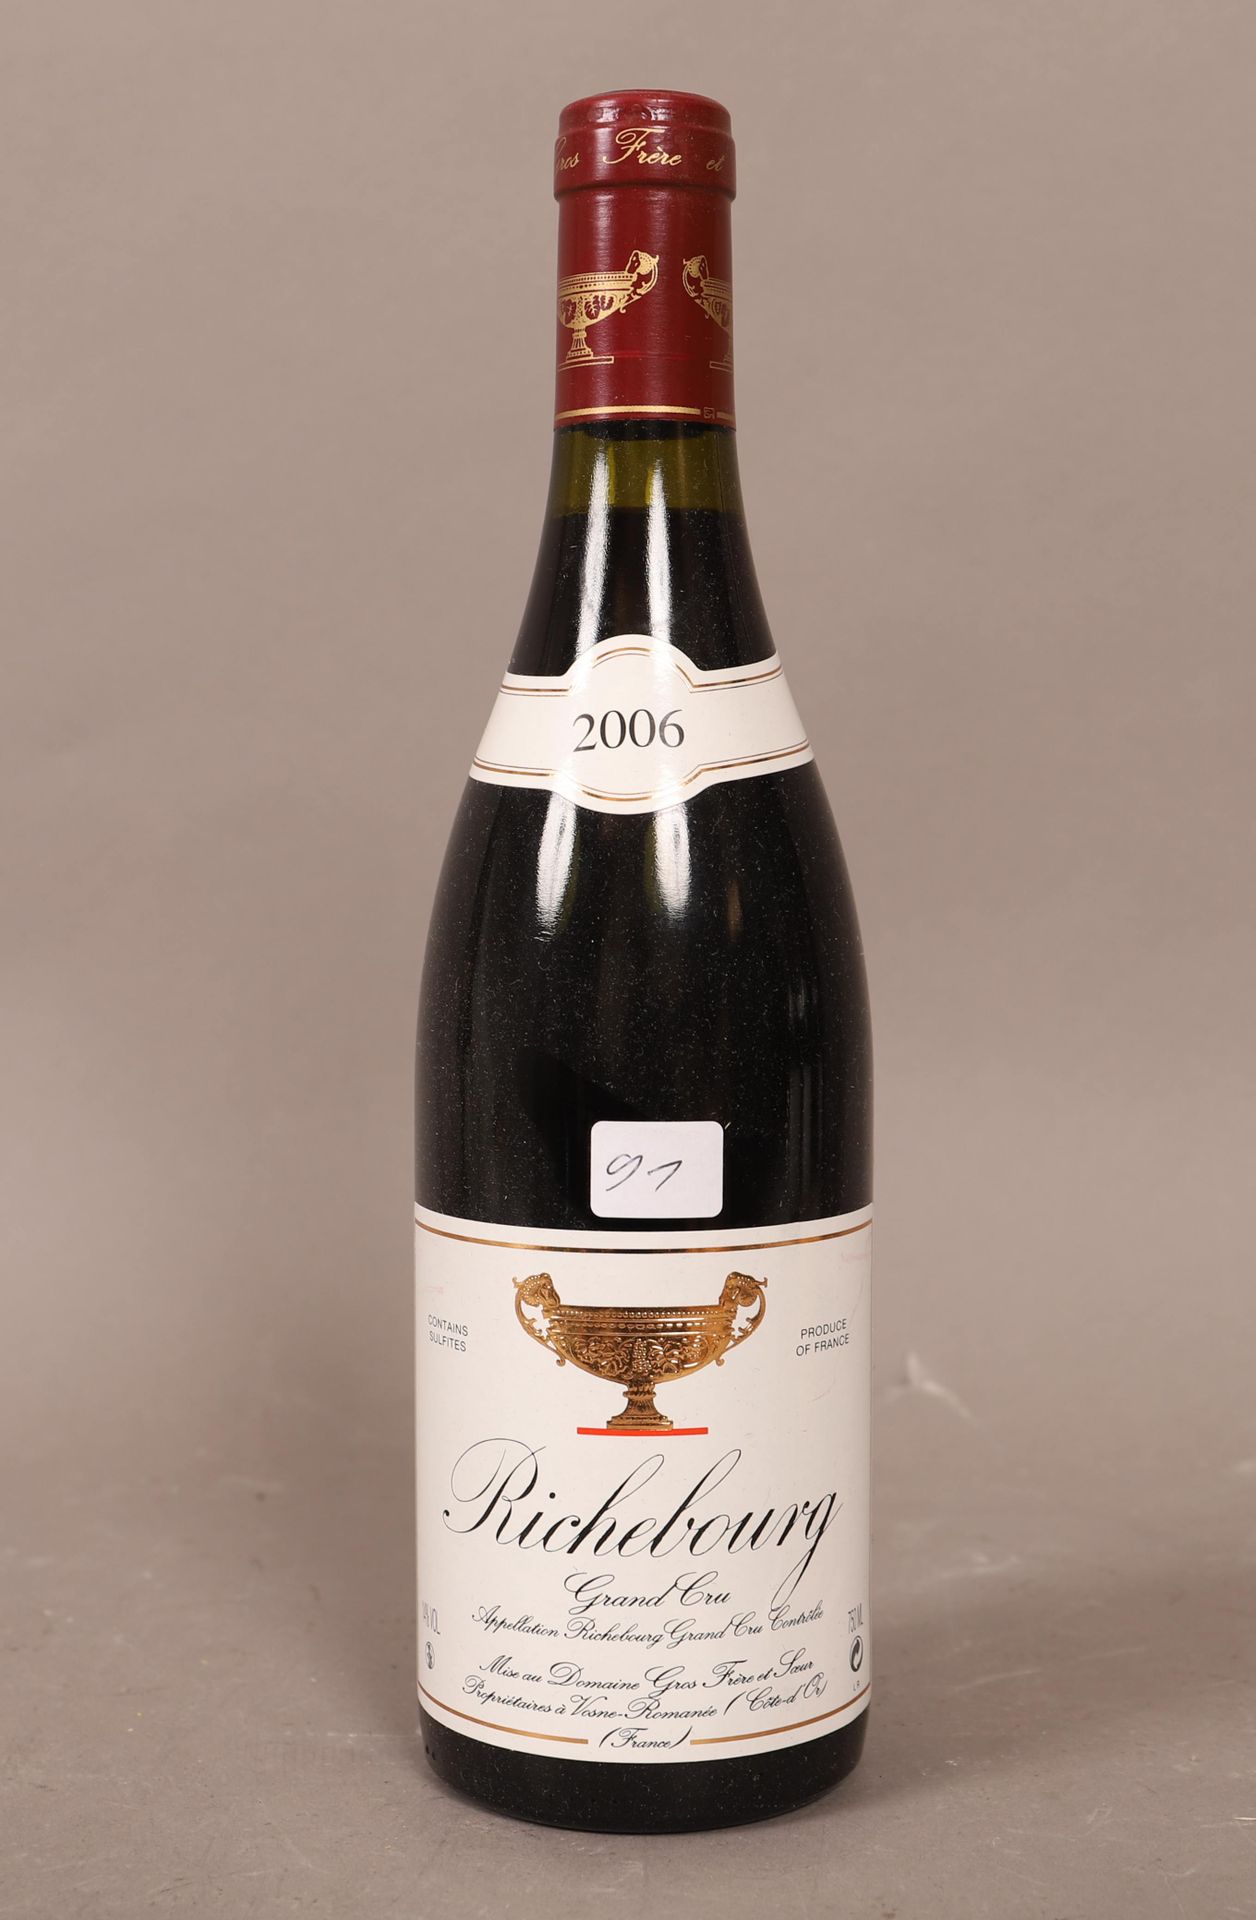 Null 里奇堡 (x1)

Gros Frère et Soeur酒庄

2006

0,75L